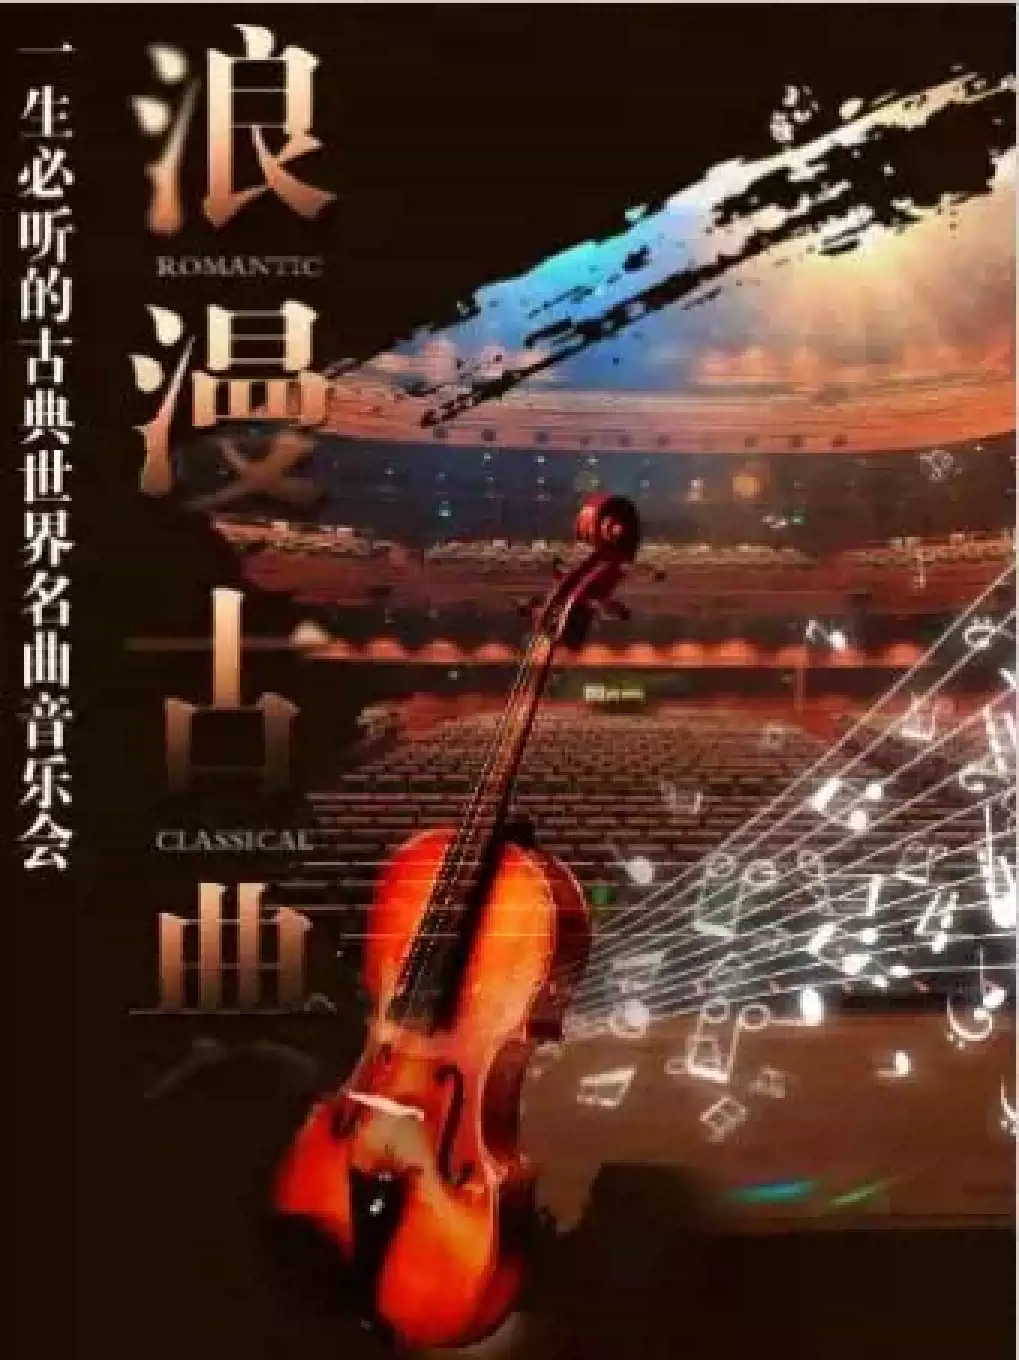 【天津】“浪漫古典” 一生必听的古典名曲音乐会